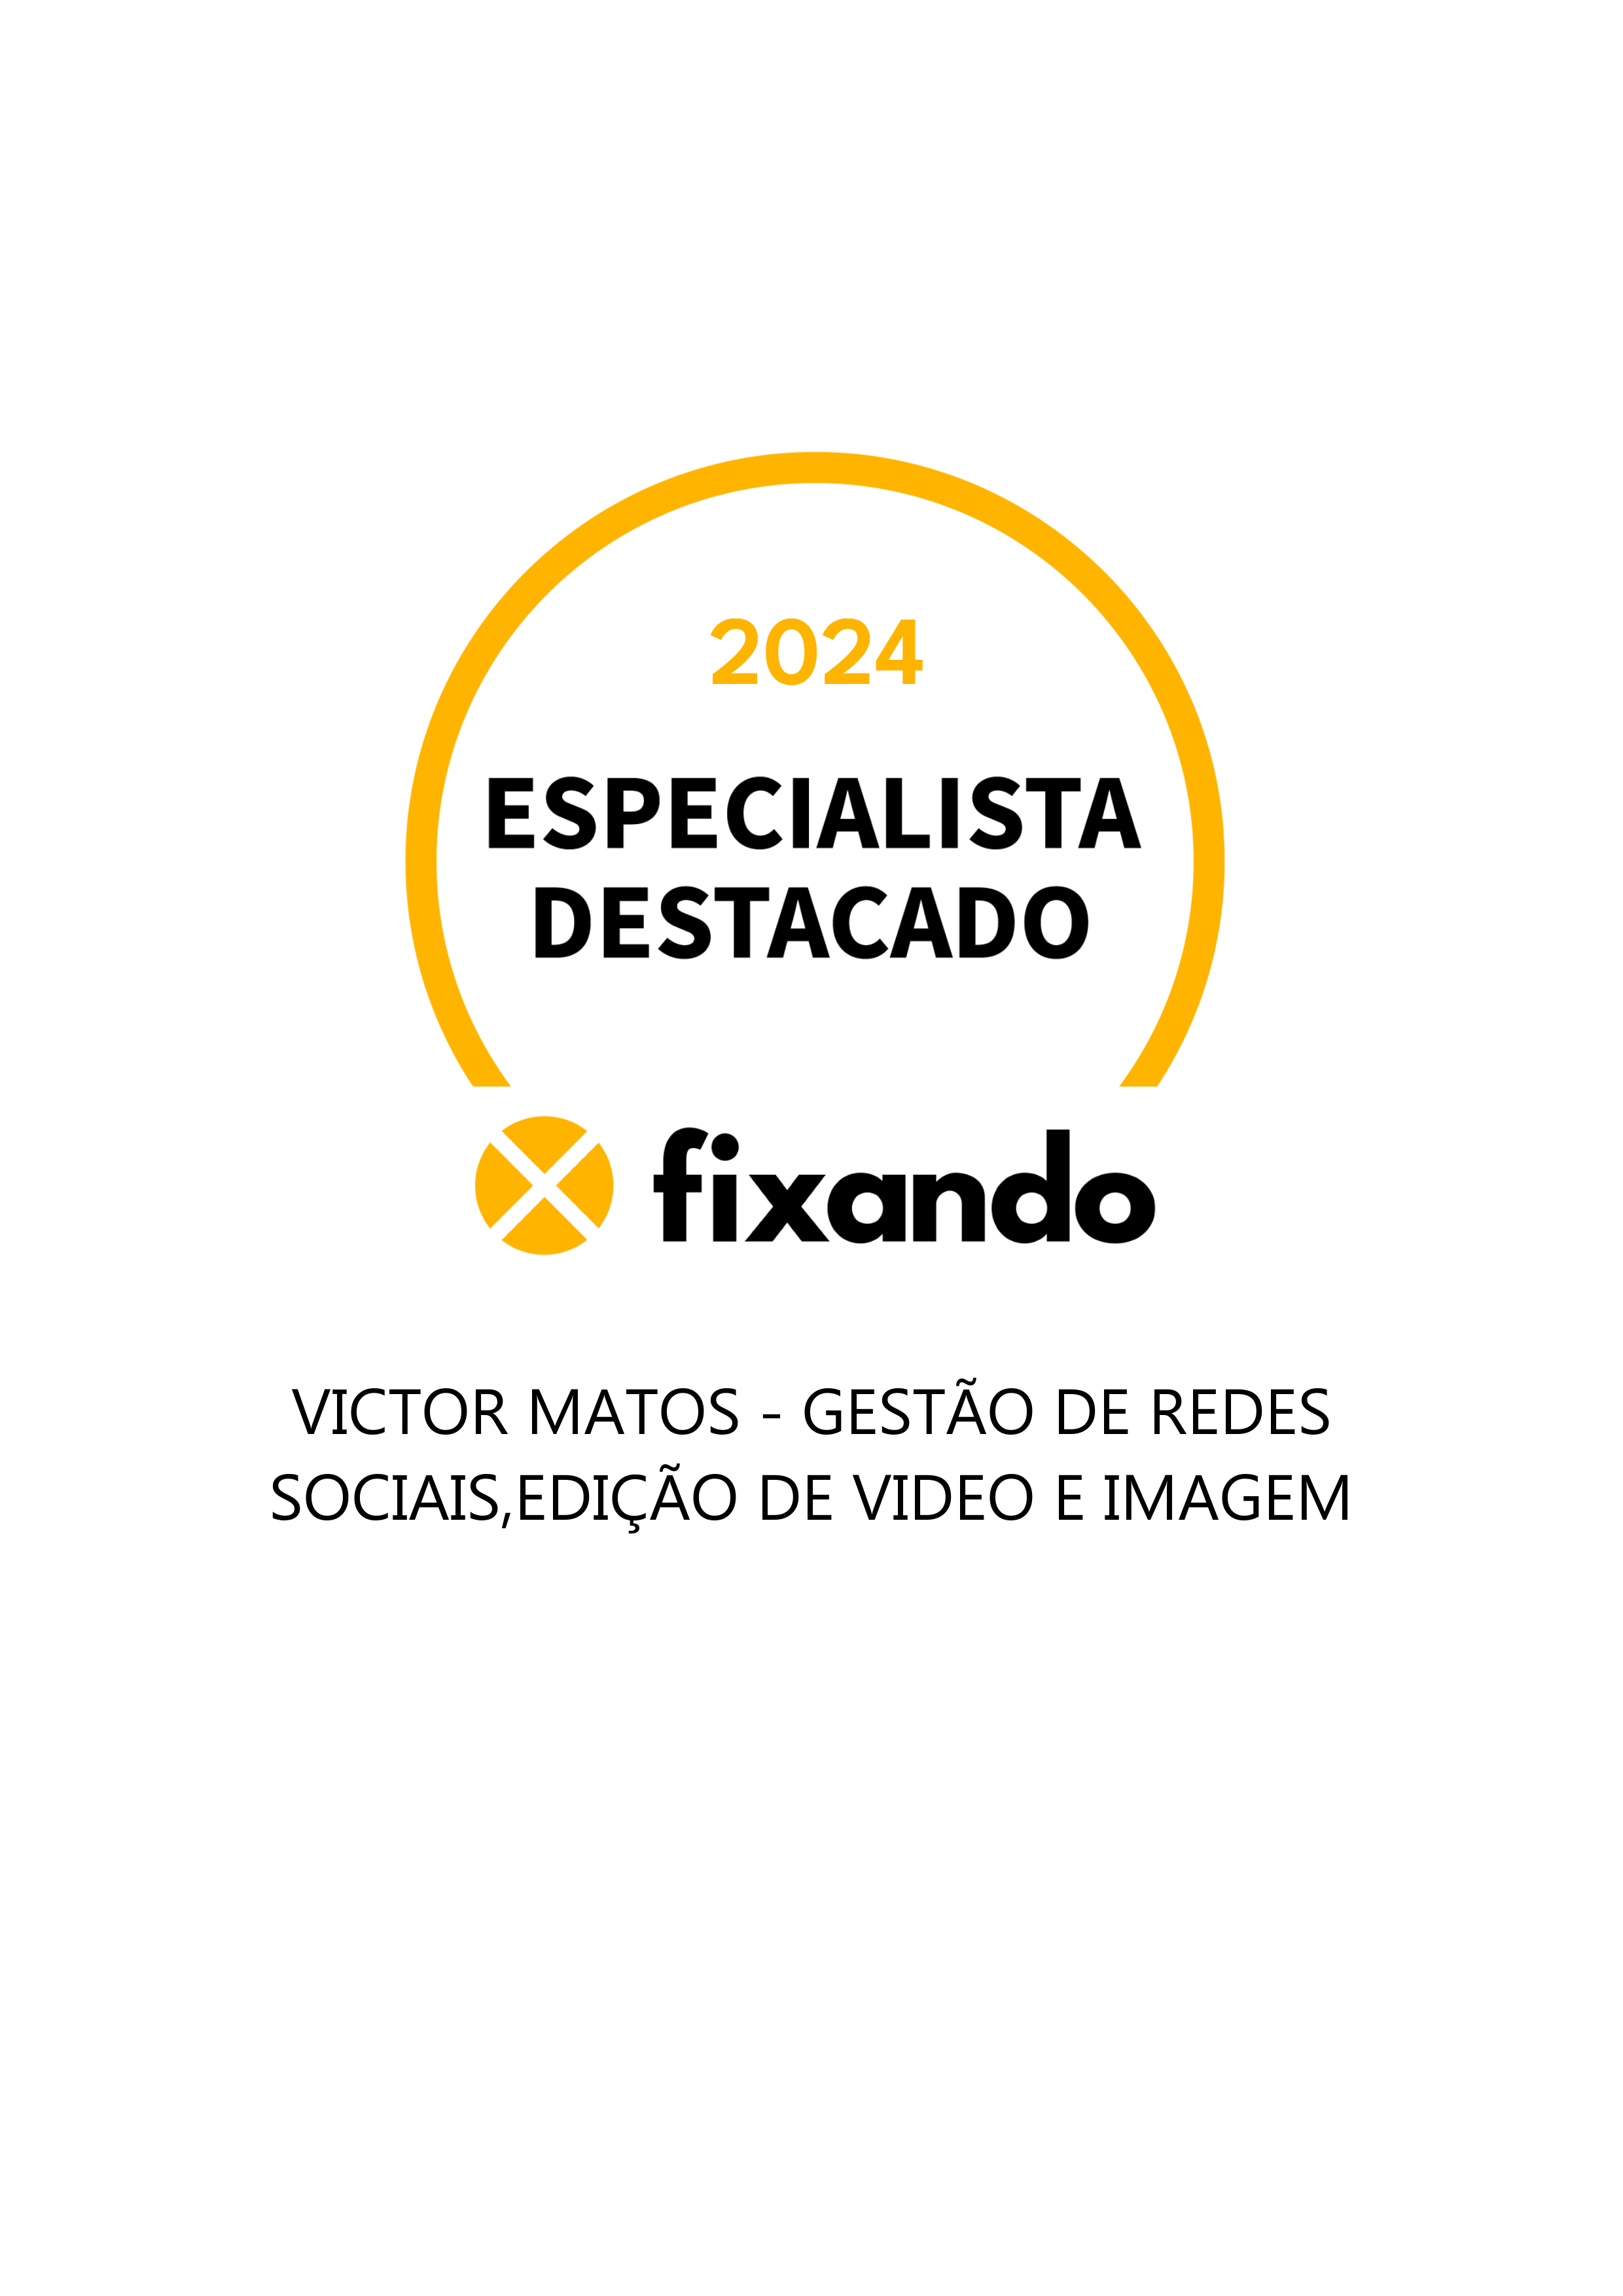 Victor Matos - Gestão de Redes Sociais,edição de video e imagem - Anadia - Otimização de Motores de Busca SEO